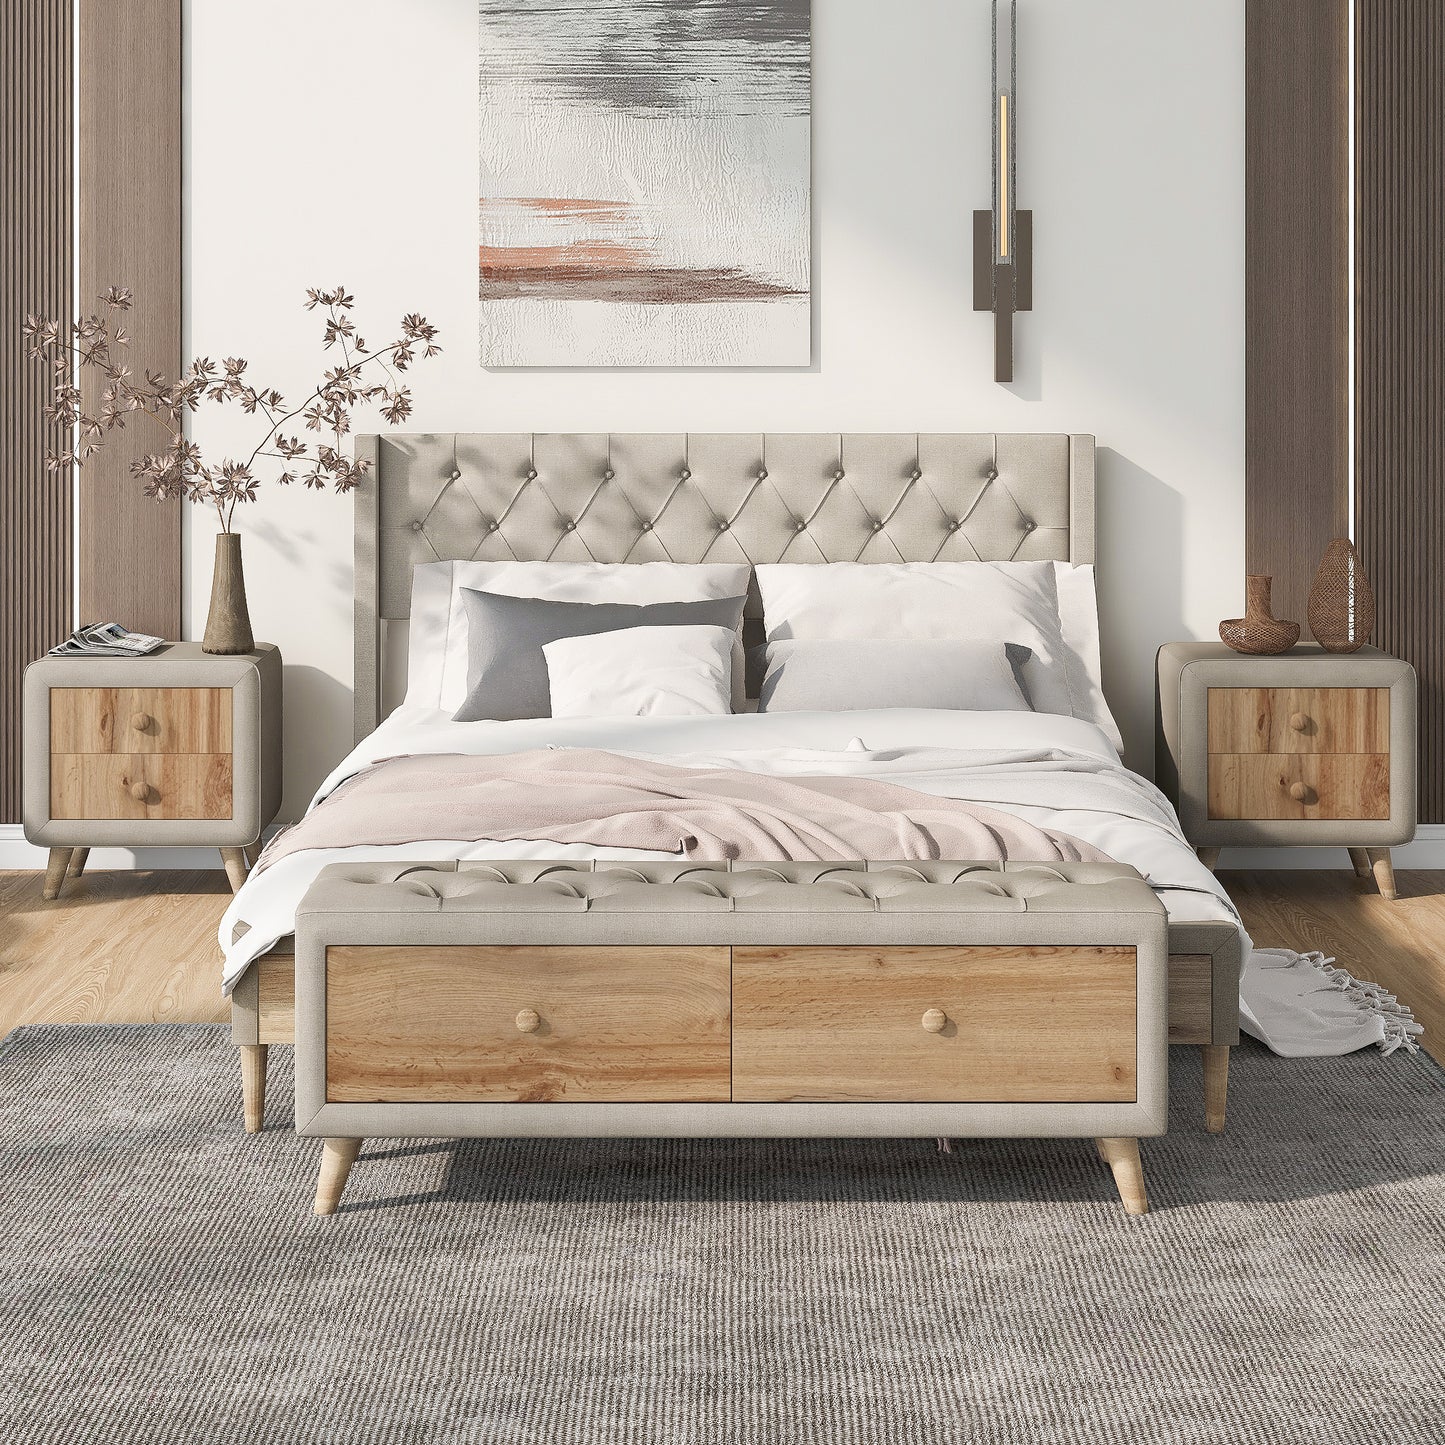 4-Piece Bedroom Set Queen Size Upholstered Platform Bed